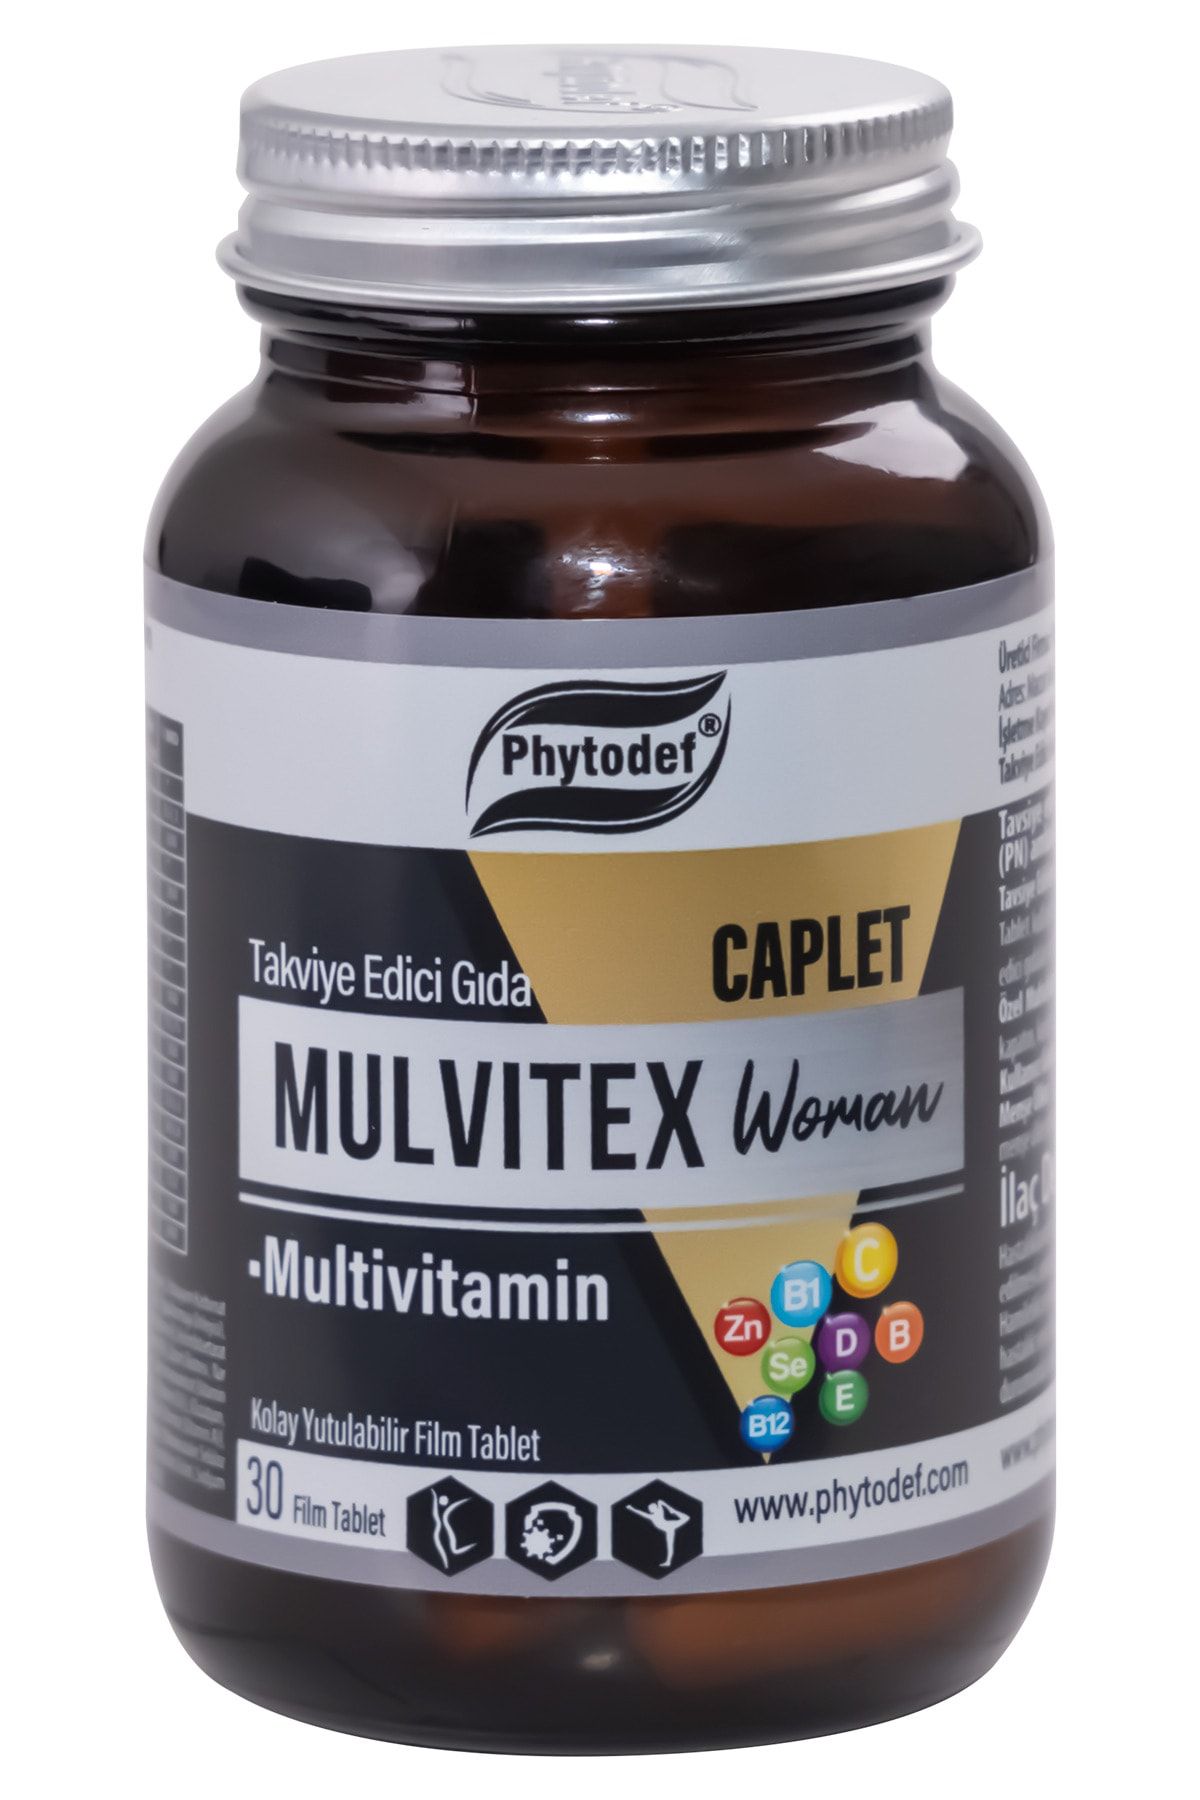 Phytodef Mulvitex Multivitamin Woman - 30 Tablet